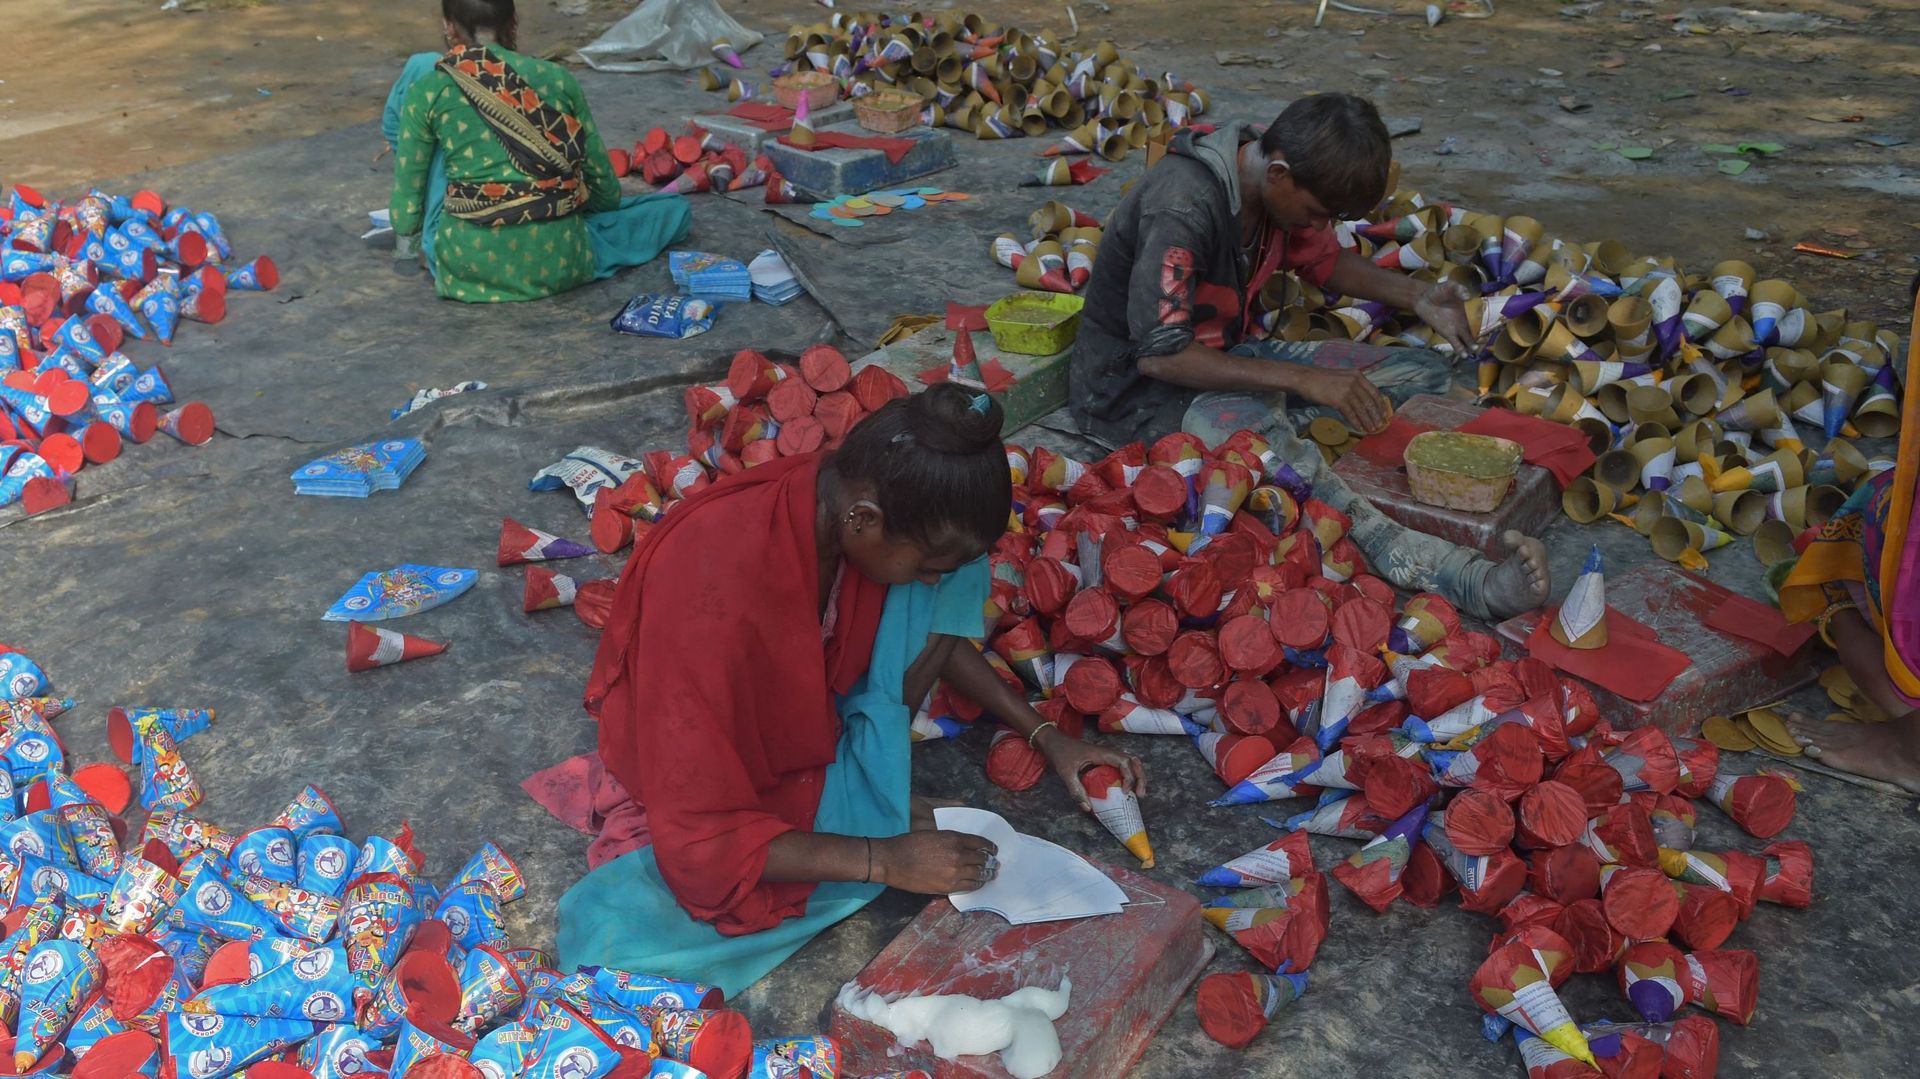 Image d’illustration : des ouvriers fabriquent des pétards dans un atelier pour la fête de Diwali, dans la banlieue d’Ahmedabad, le 20 octobre 2021.
